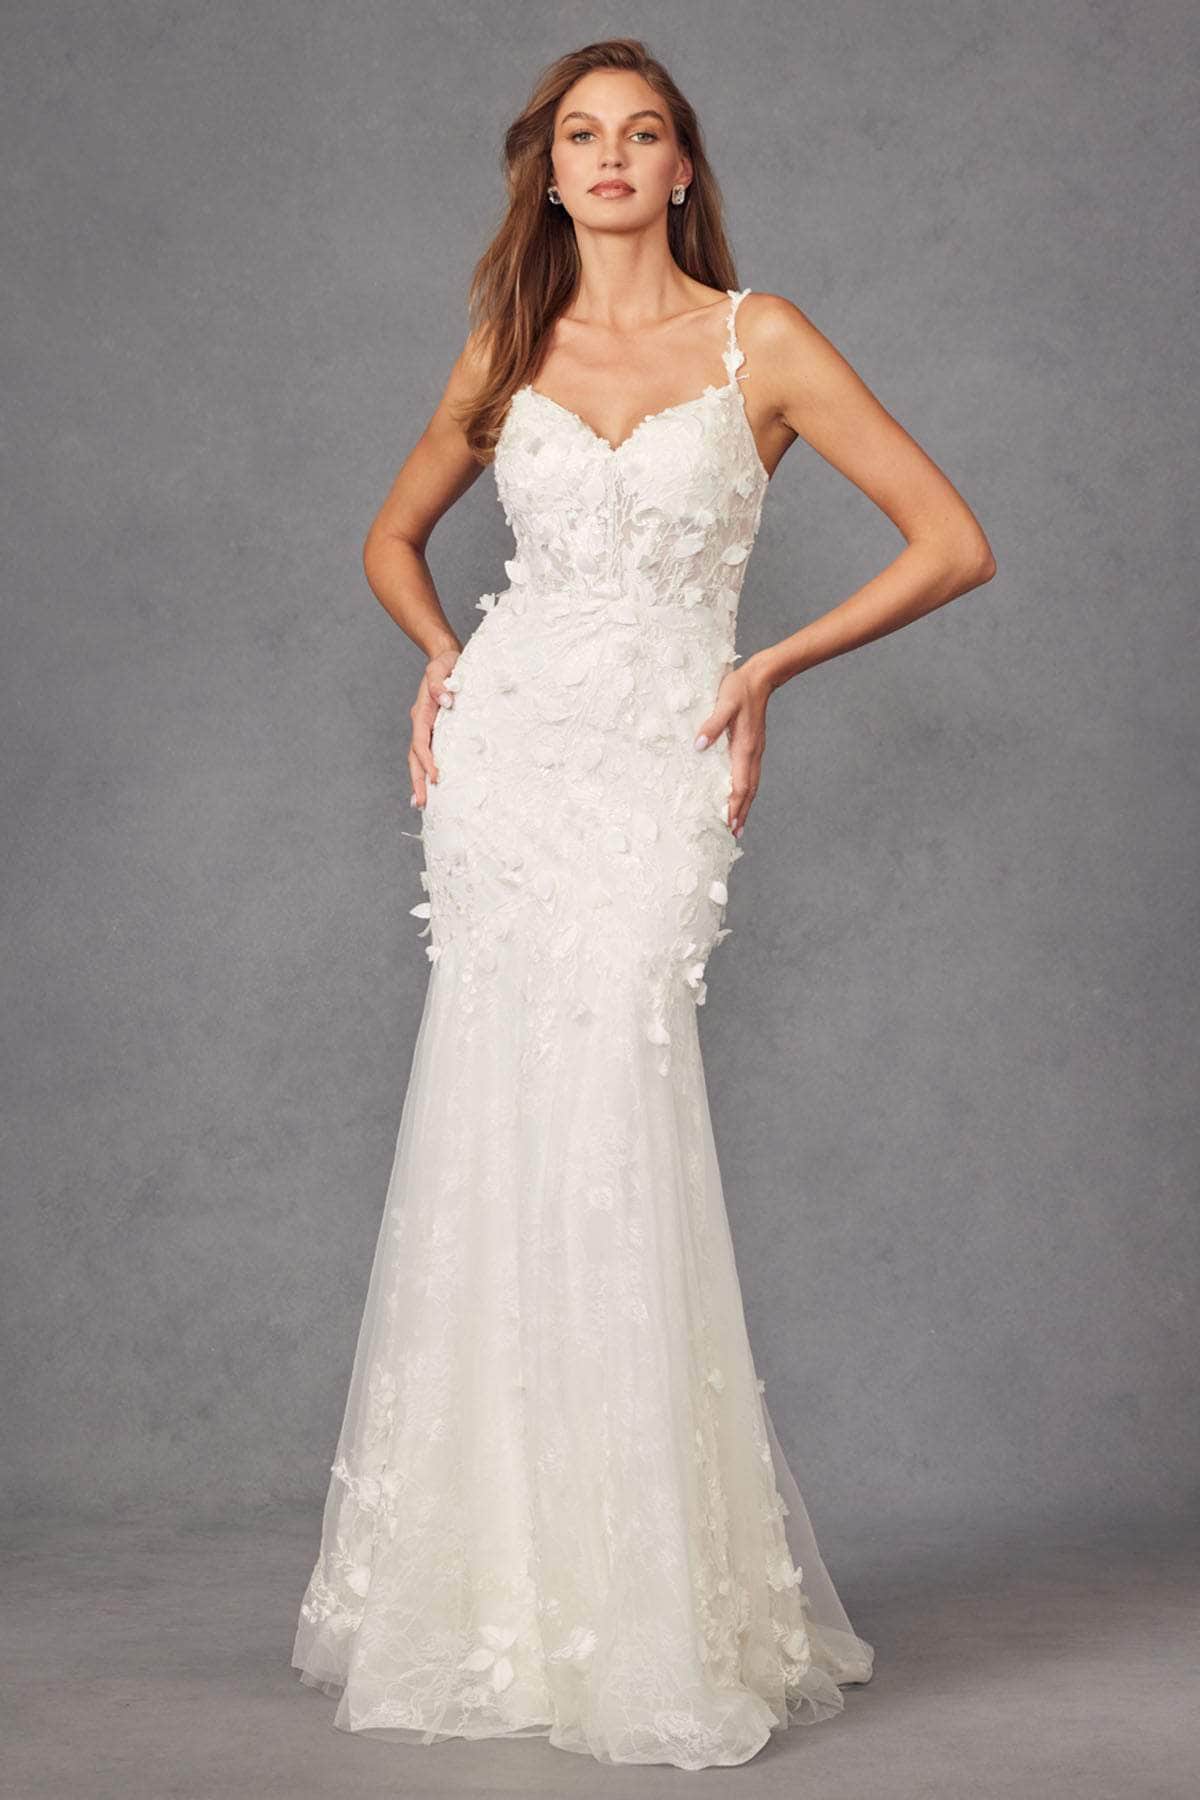 Juliet Dresses JT2475UW - 3D Floral Embellished Mermaid Wedding Dress
